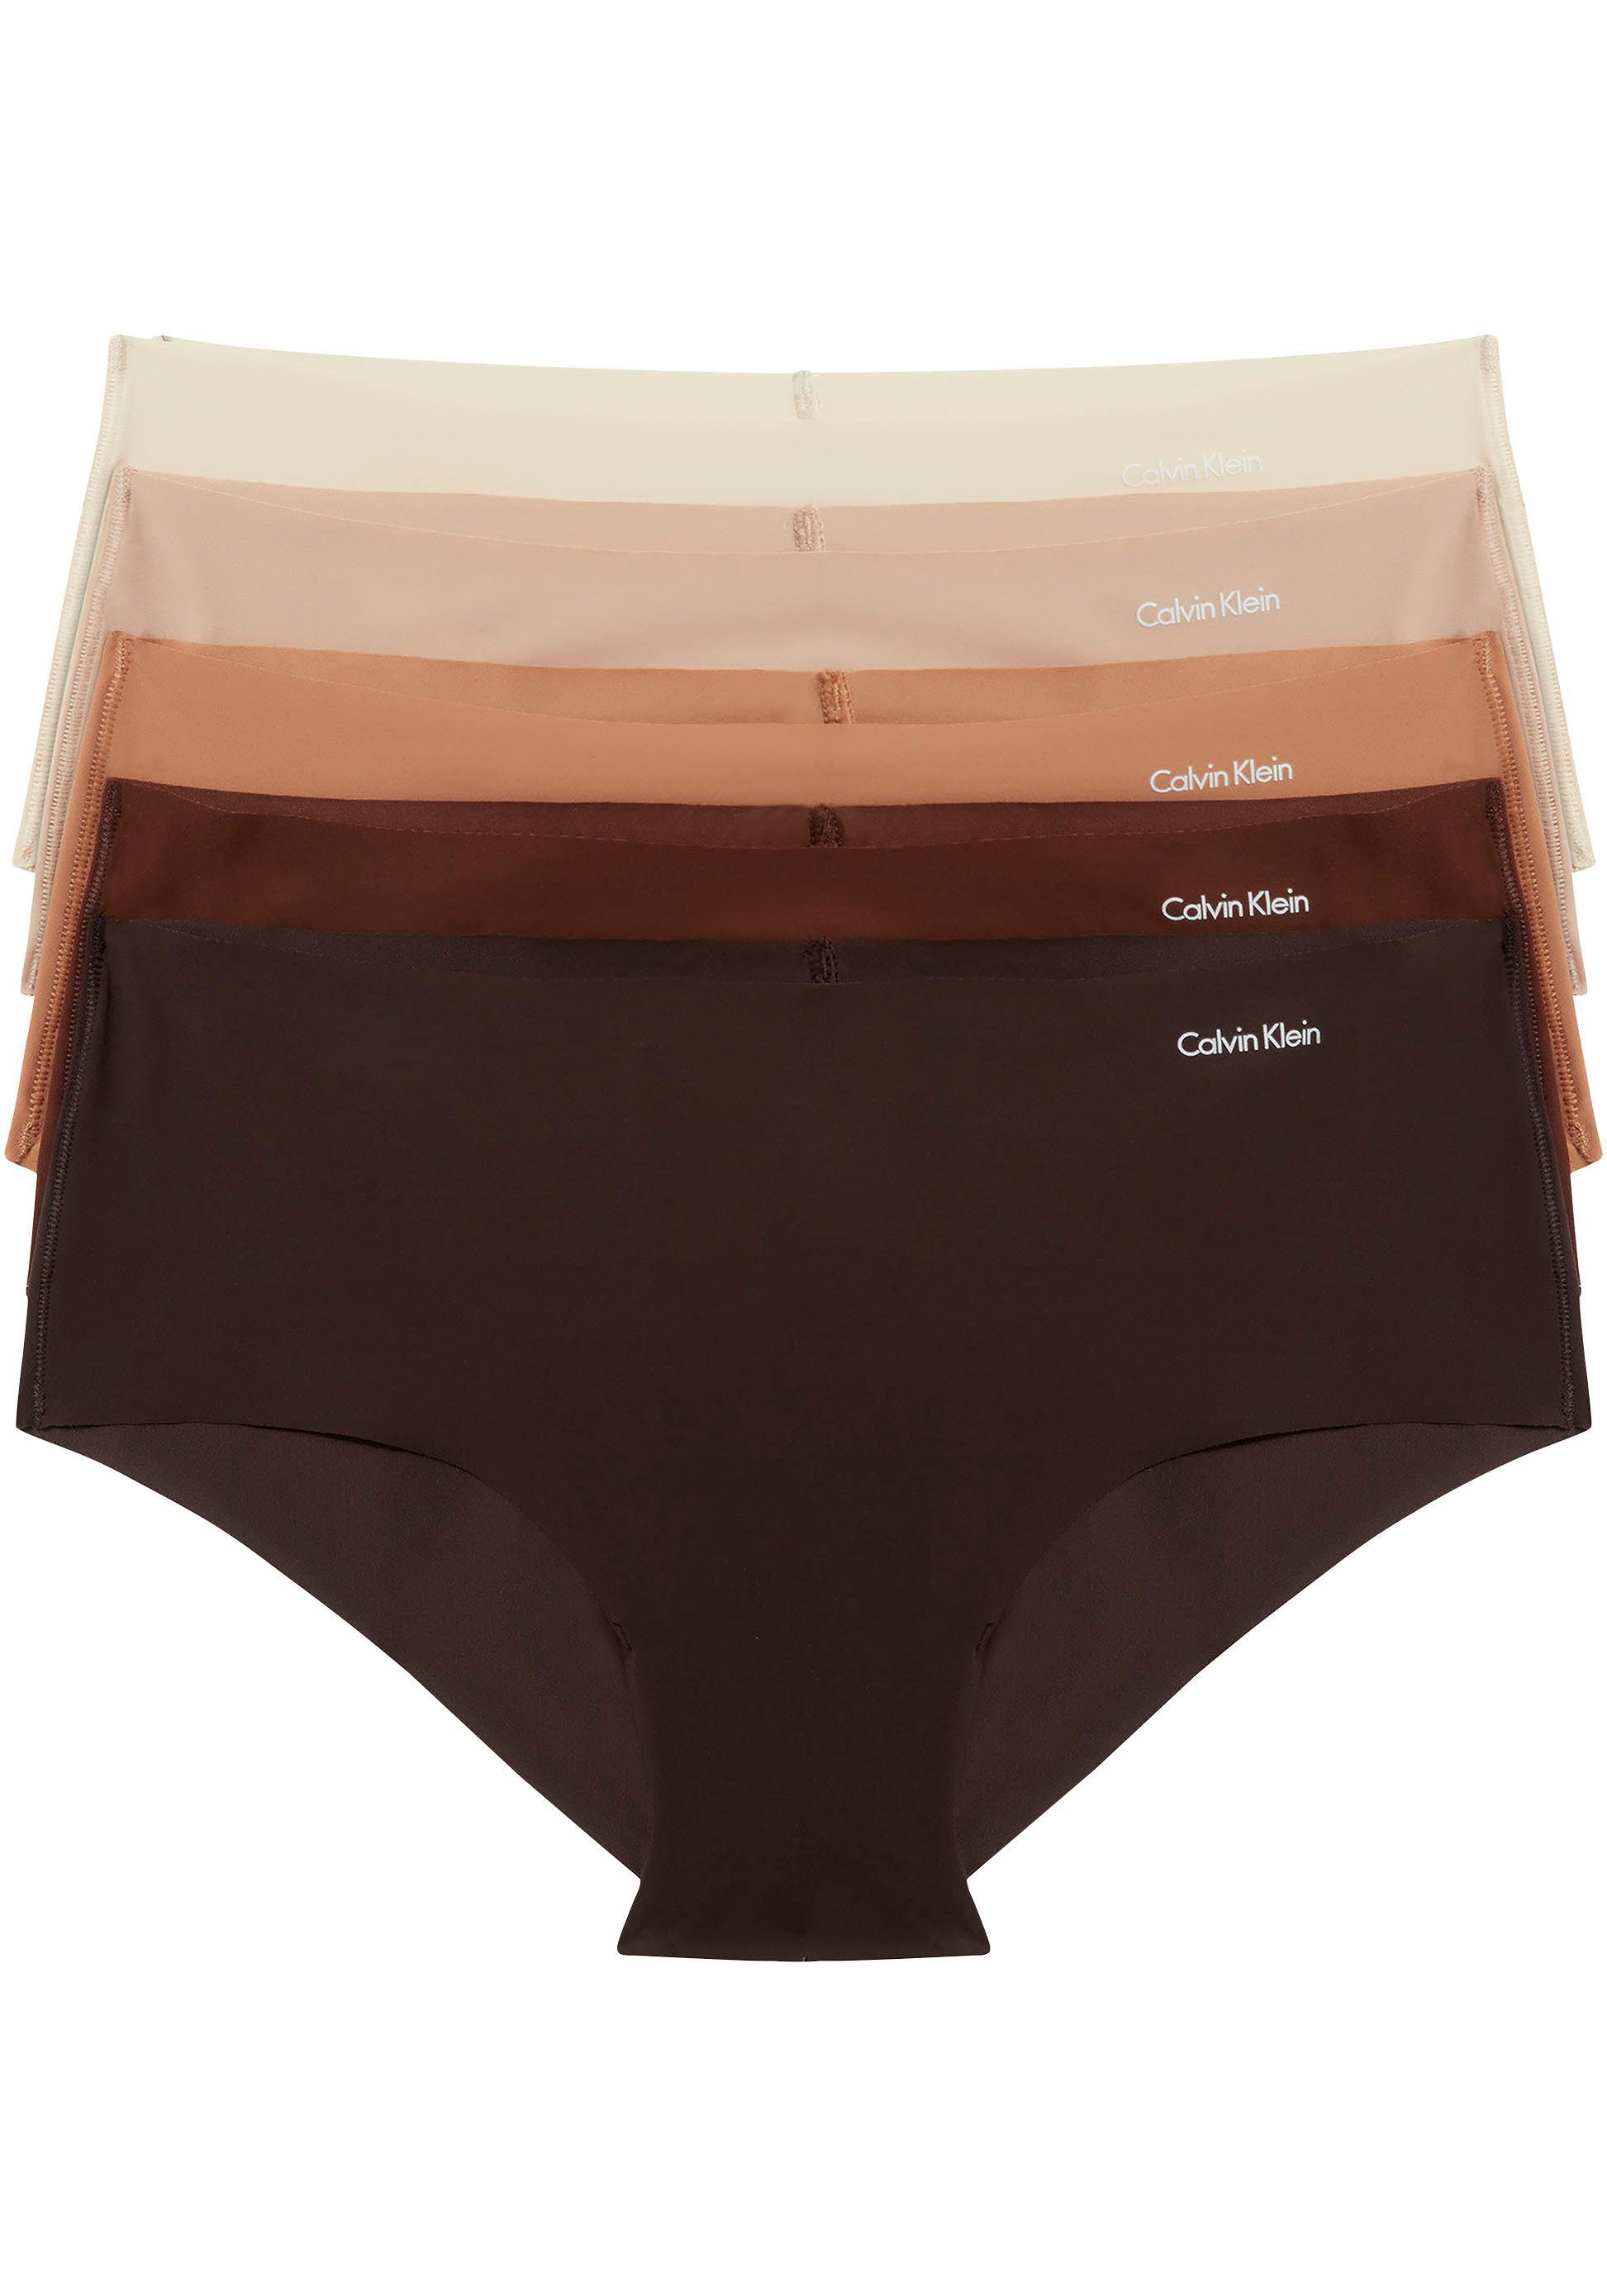 Bikinislip 5er-Pack) 5-St., mit Markenlabel 5PK Klein Calvin (Packung, Klein Calvin Underwear BIKINI